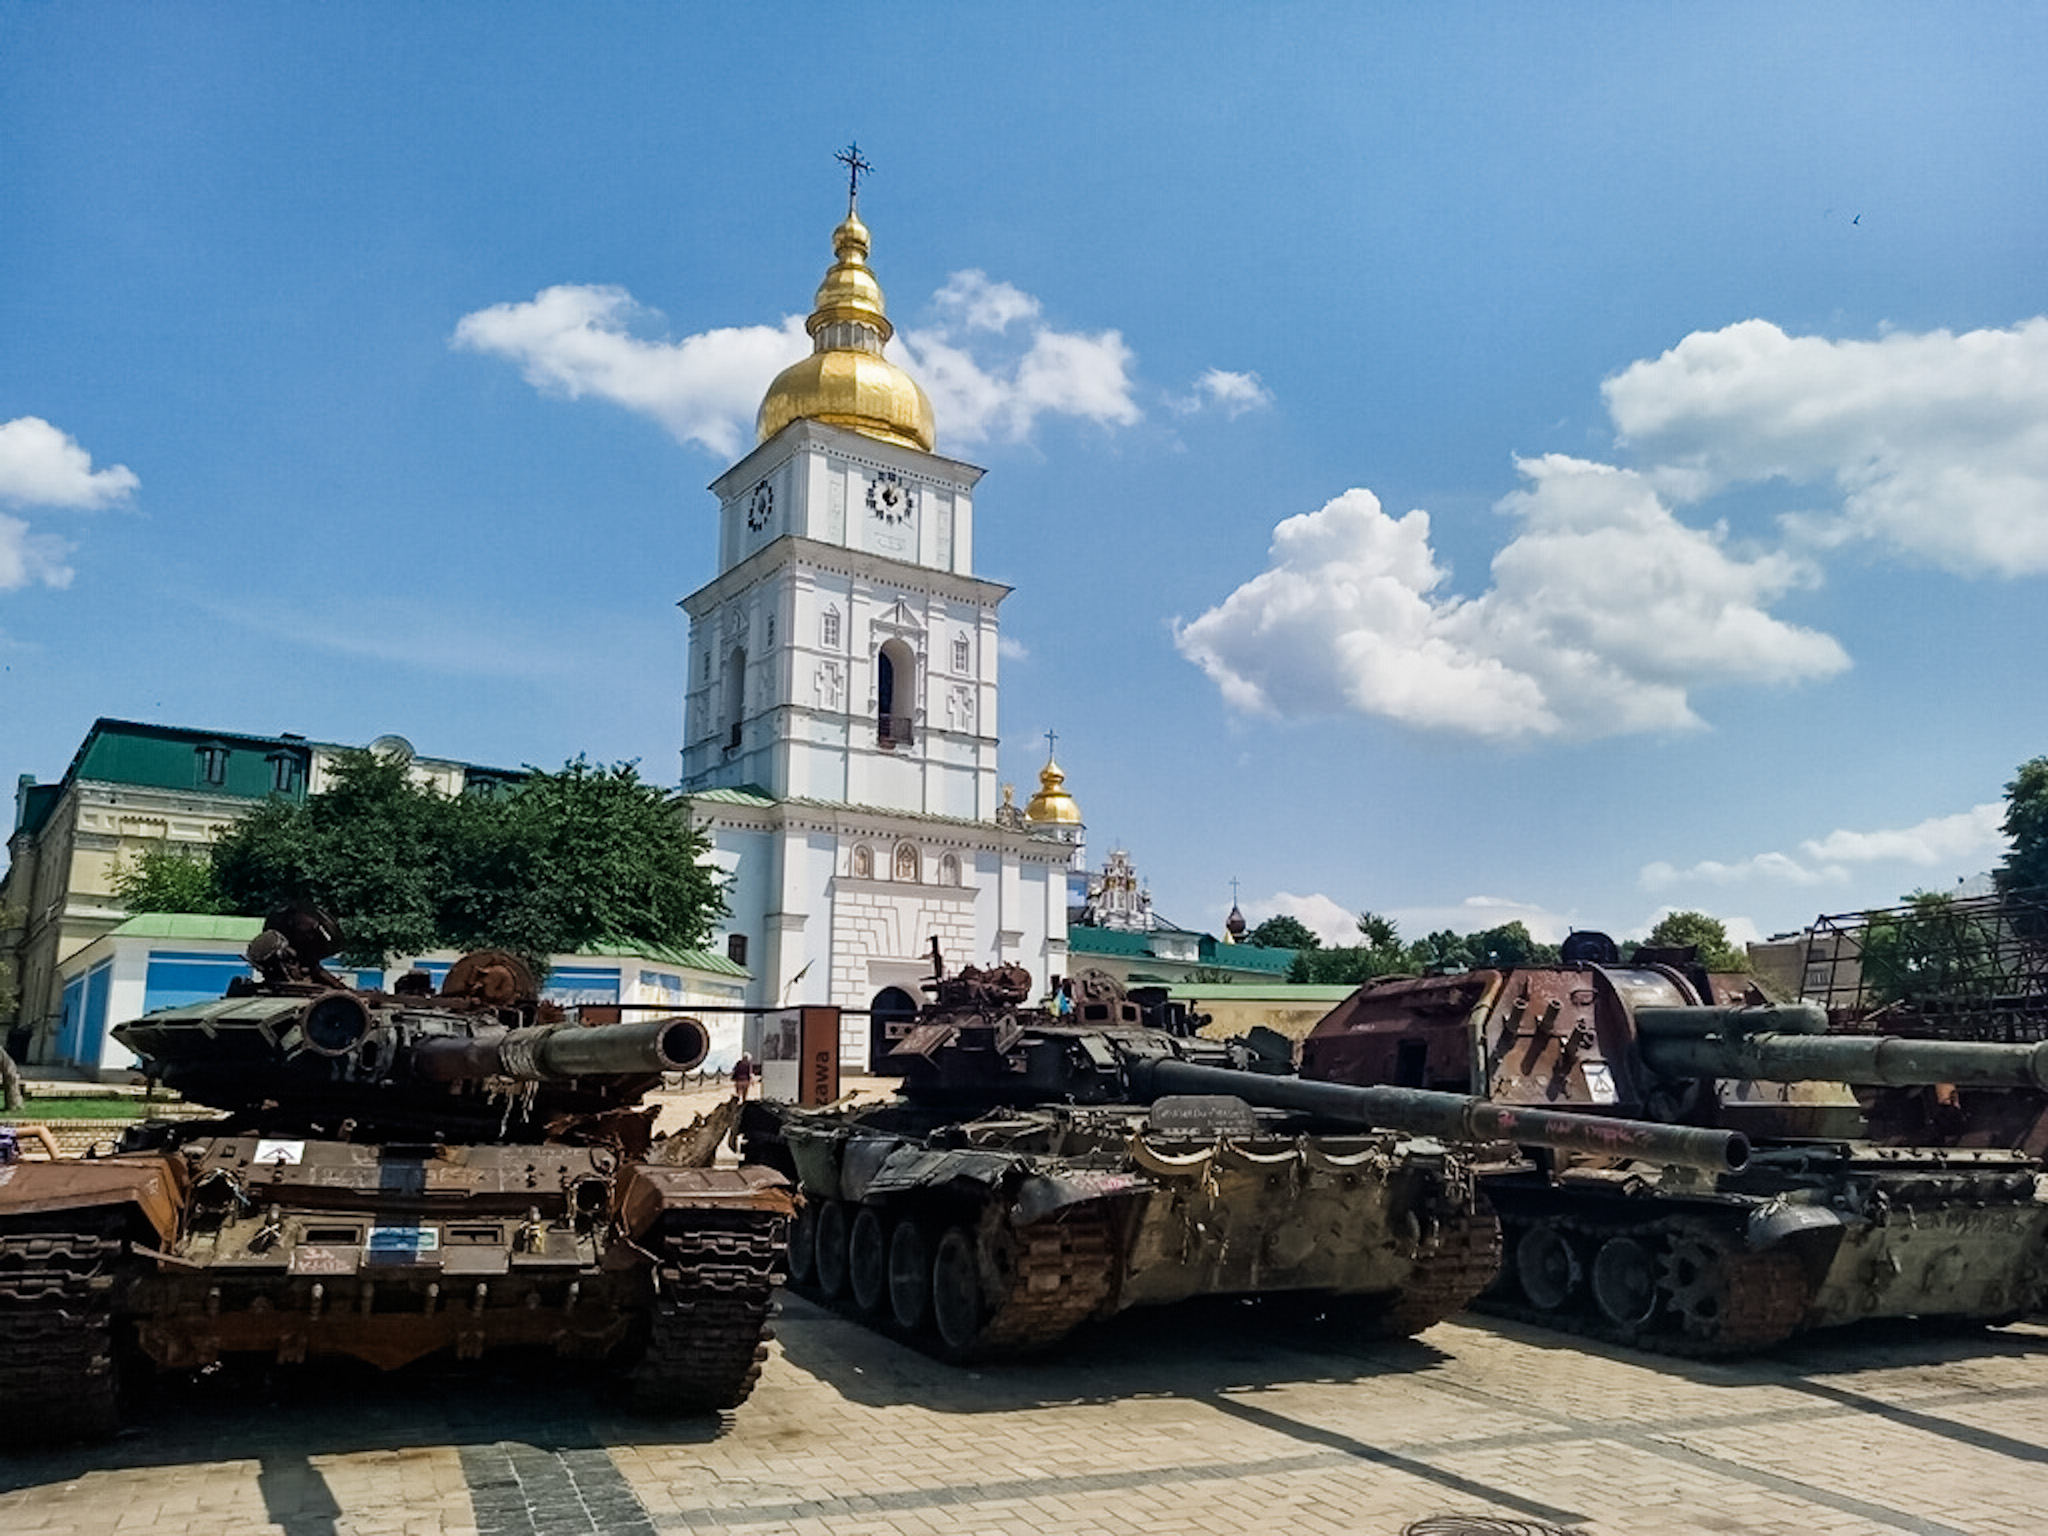 Tanks in a plaza in Ukraine.